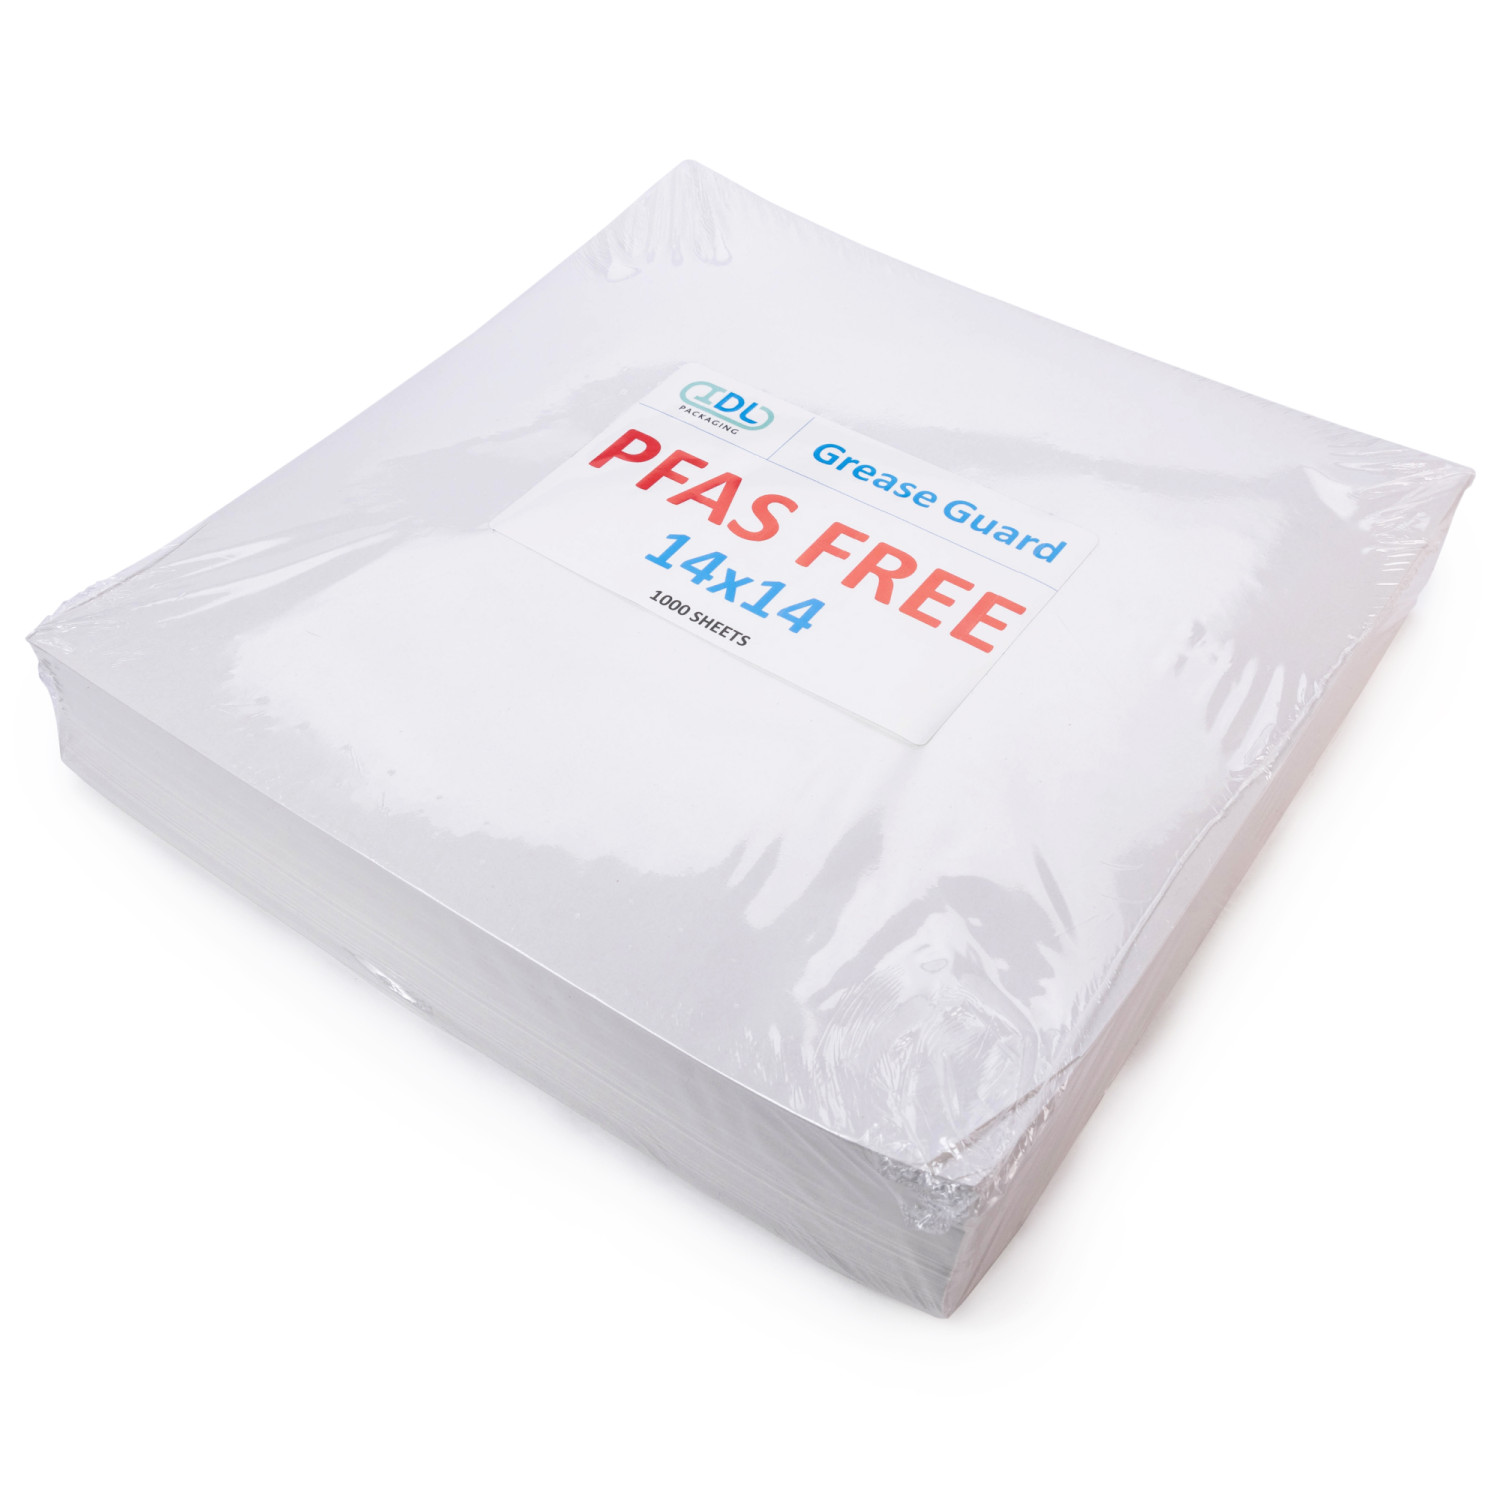 PFAS-free base paper for baking